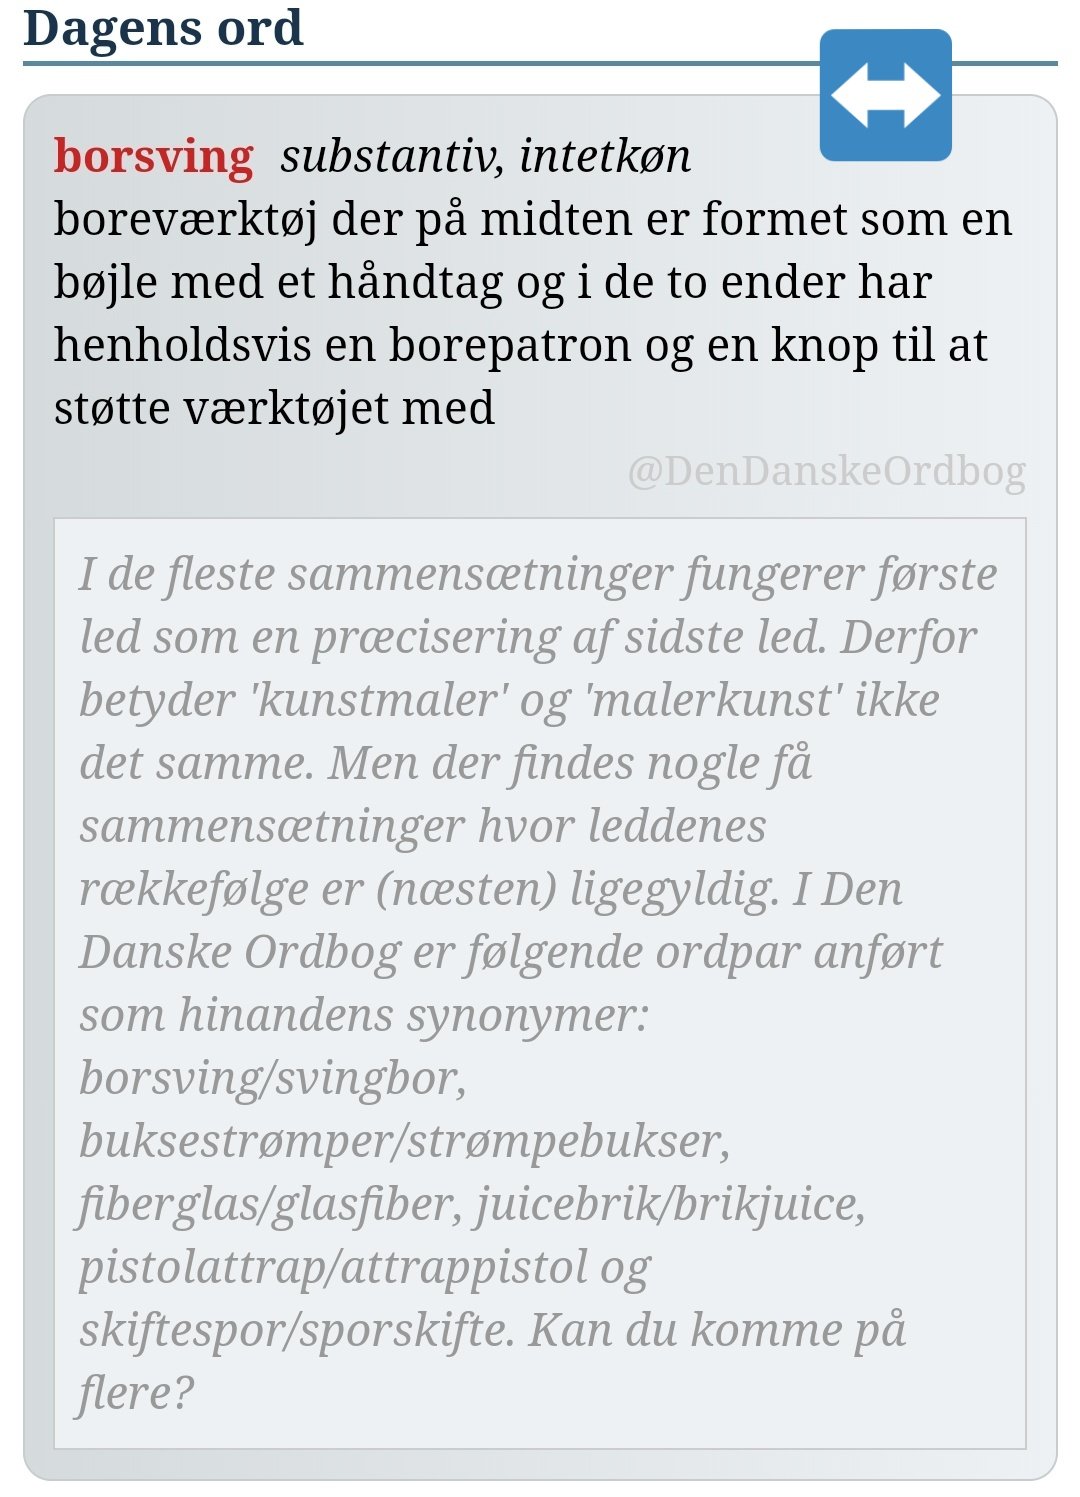 Den Danske Ordbog on X: "#vilkårligrækkefølge #sammensætninger #forlænsogbaglæns #dagensord / X